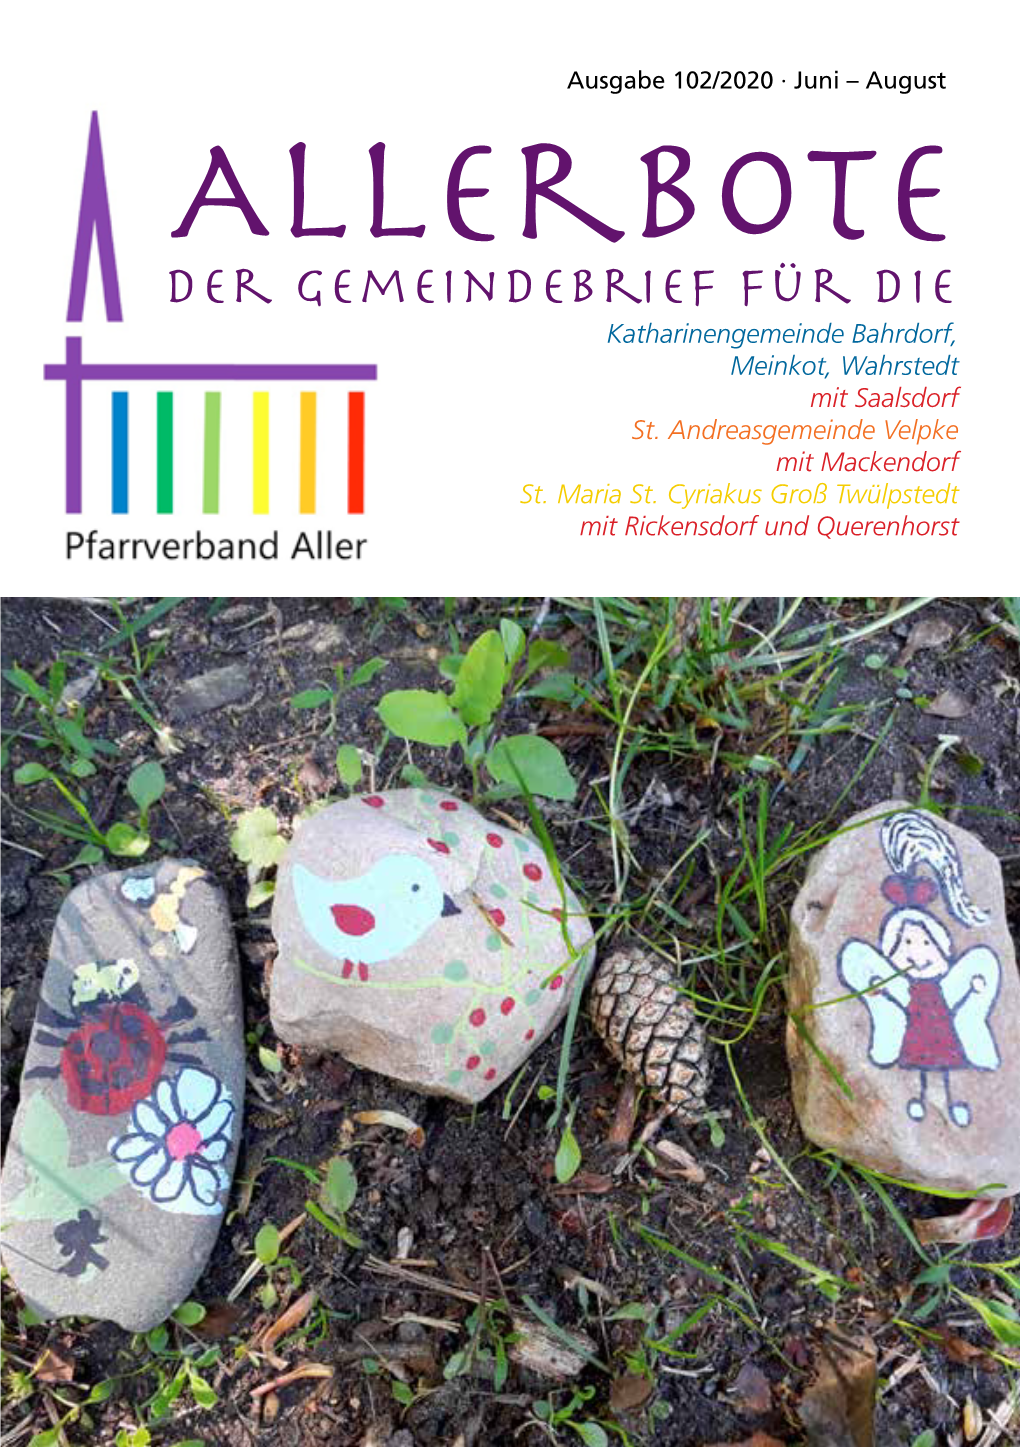 Allerbote Der Gemeindebrief Für Die Katharinengemeinde Bahrdorf, Meinkot, Wahrstedt Mit Saalsdorf St